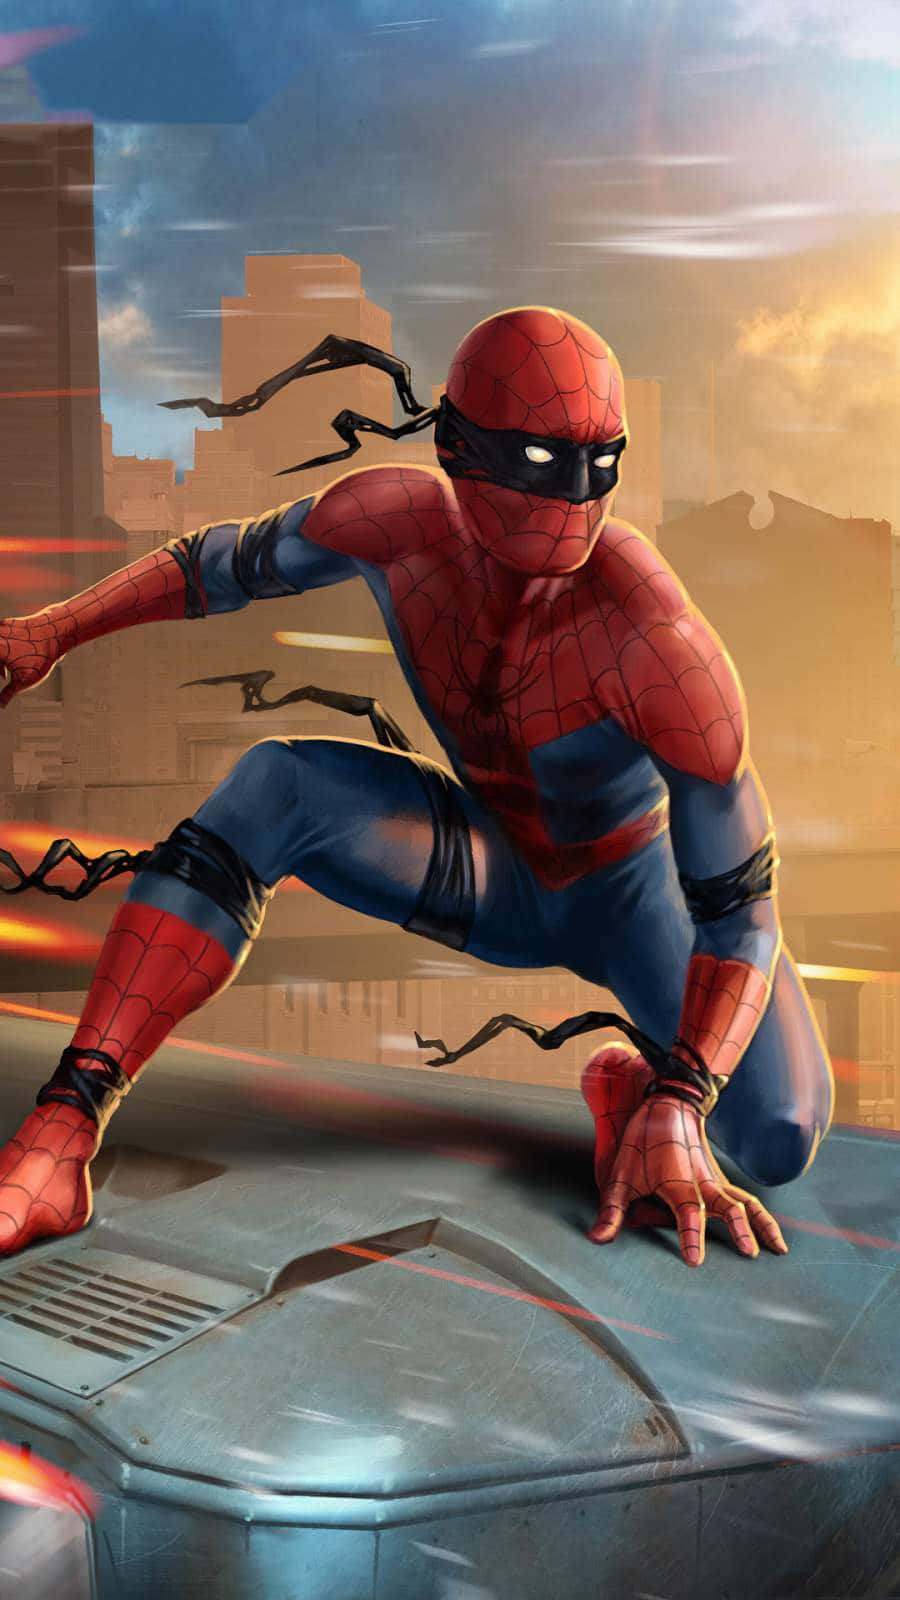 Spider Man - The Amazing Spider Man 2 Wallpaper